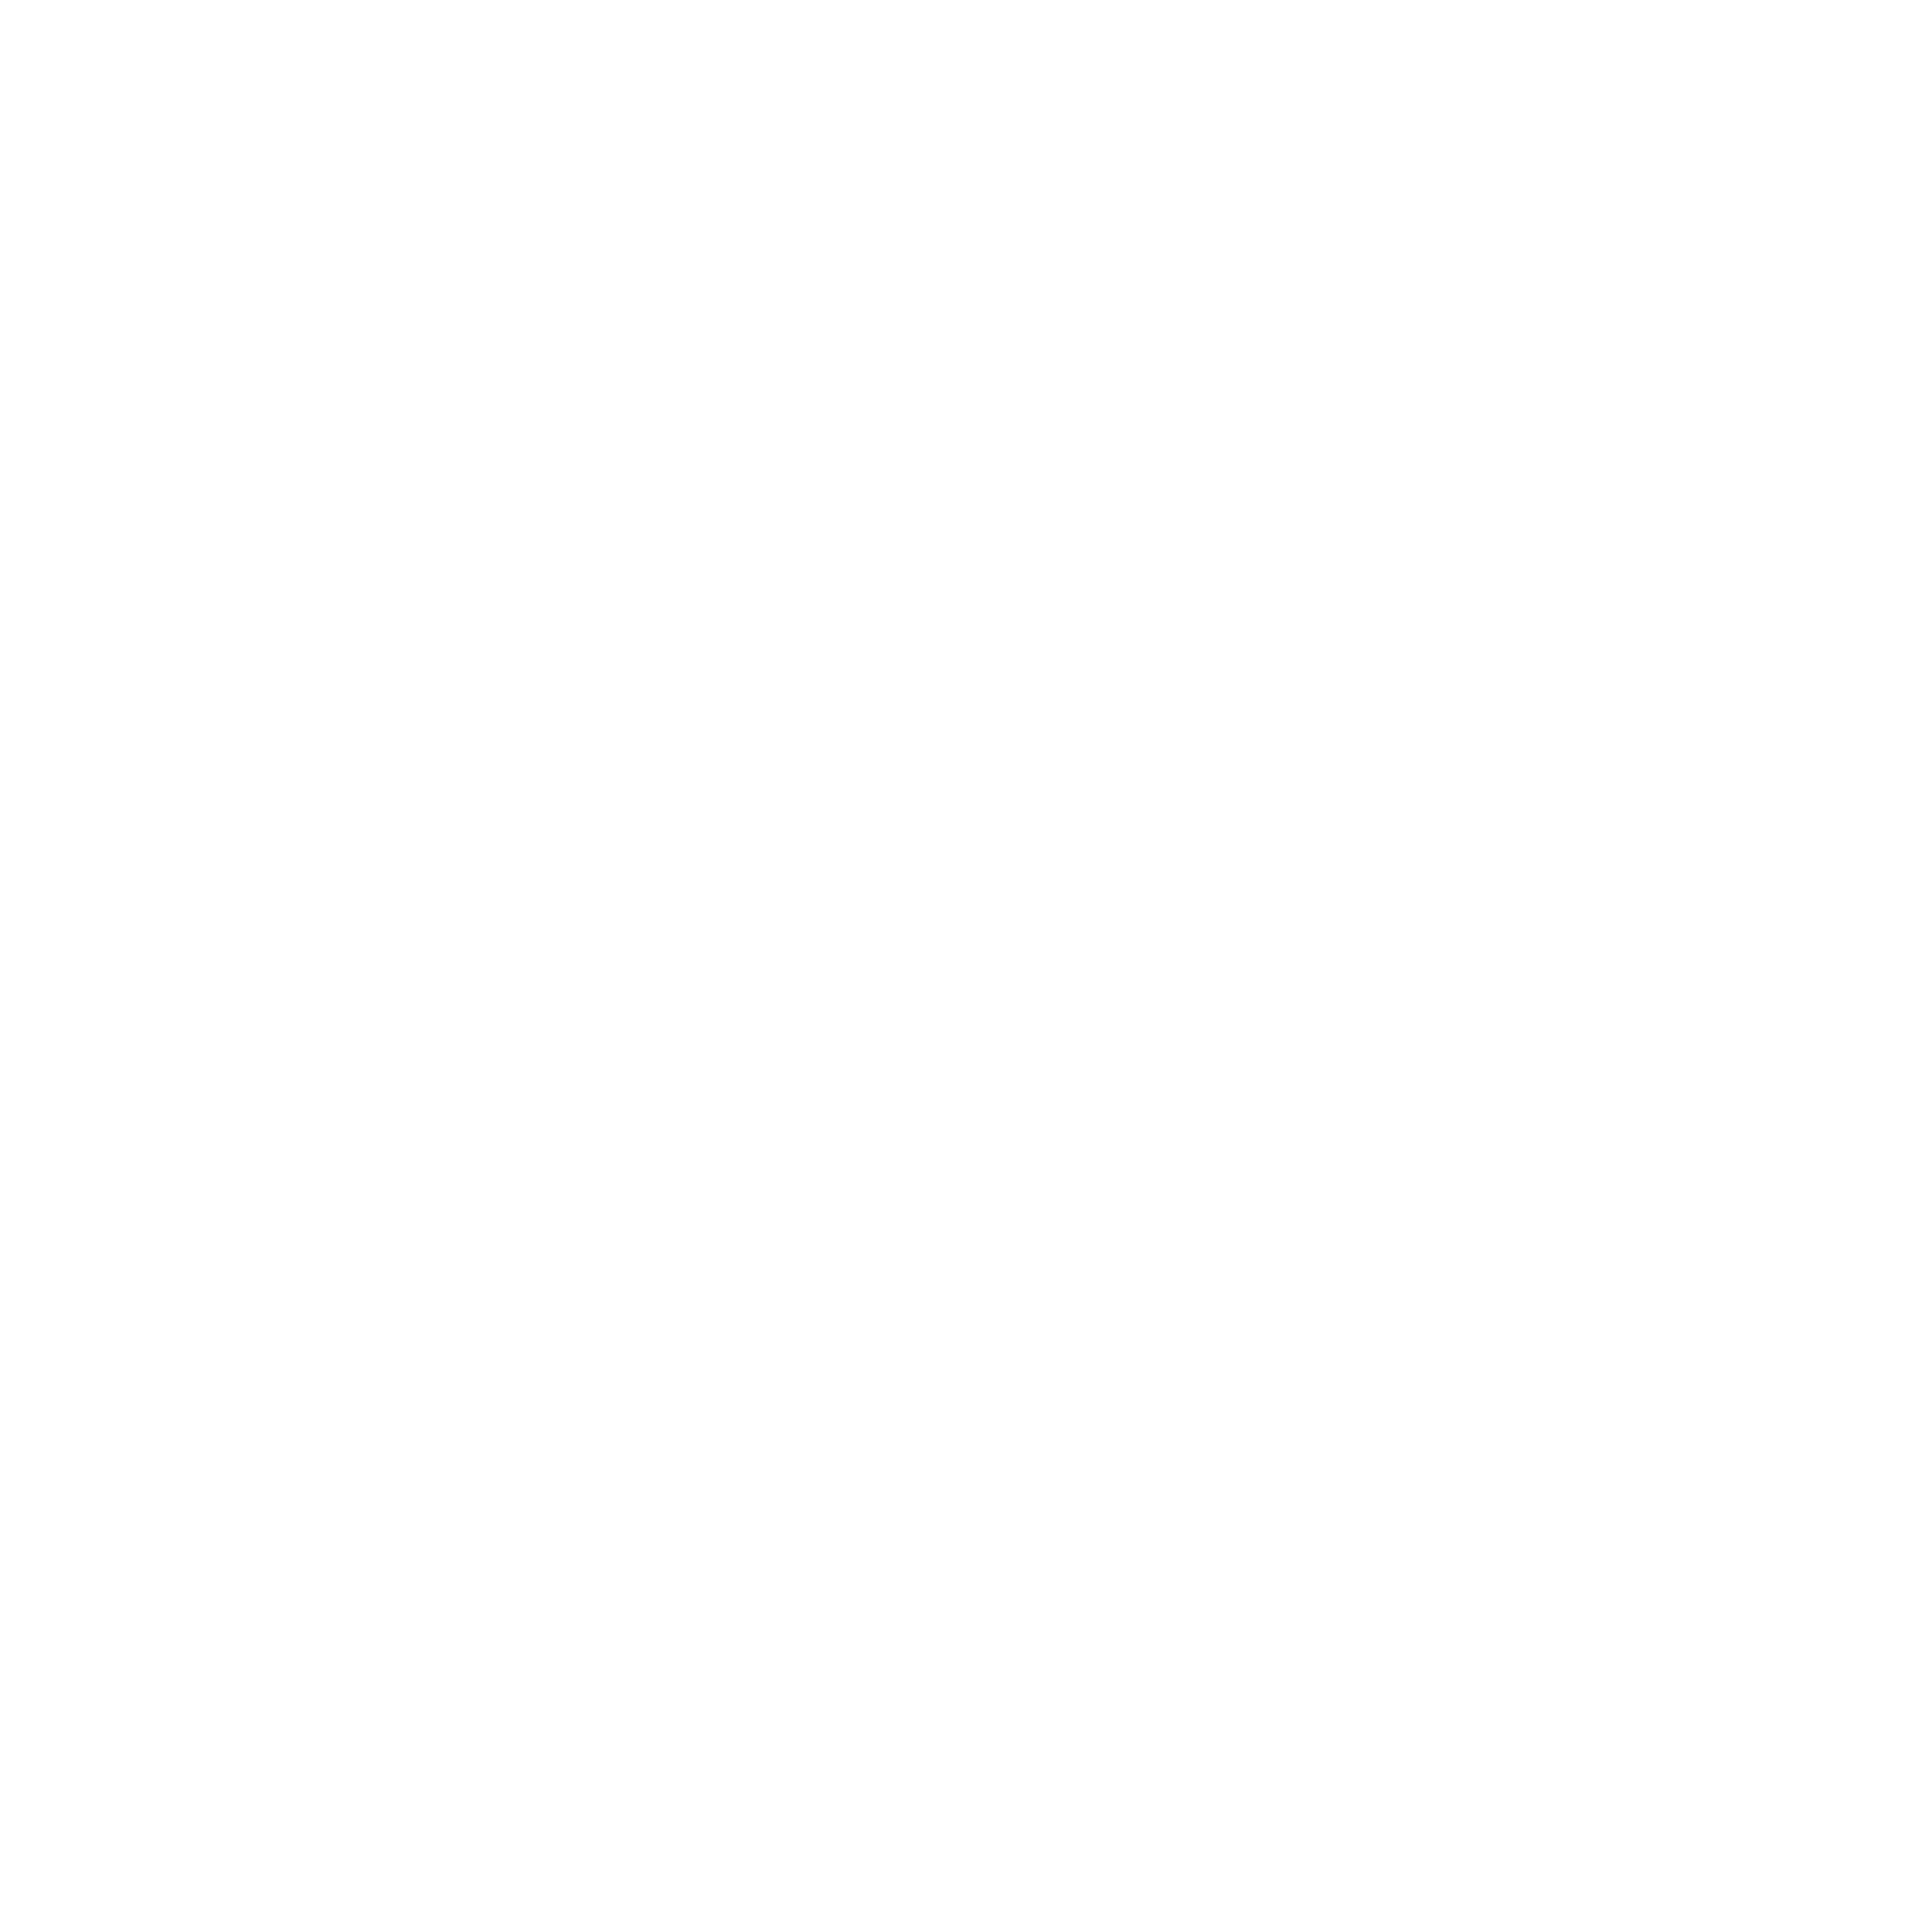 Vega Hotel Gading Serpong logo